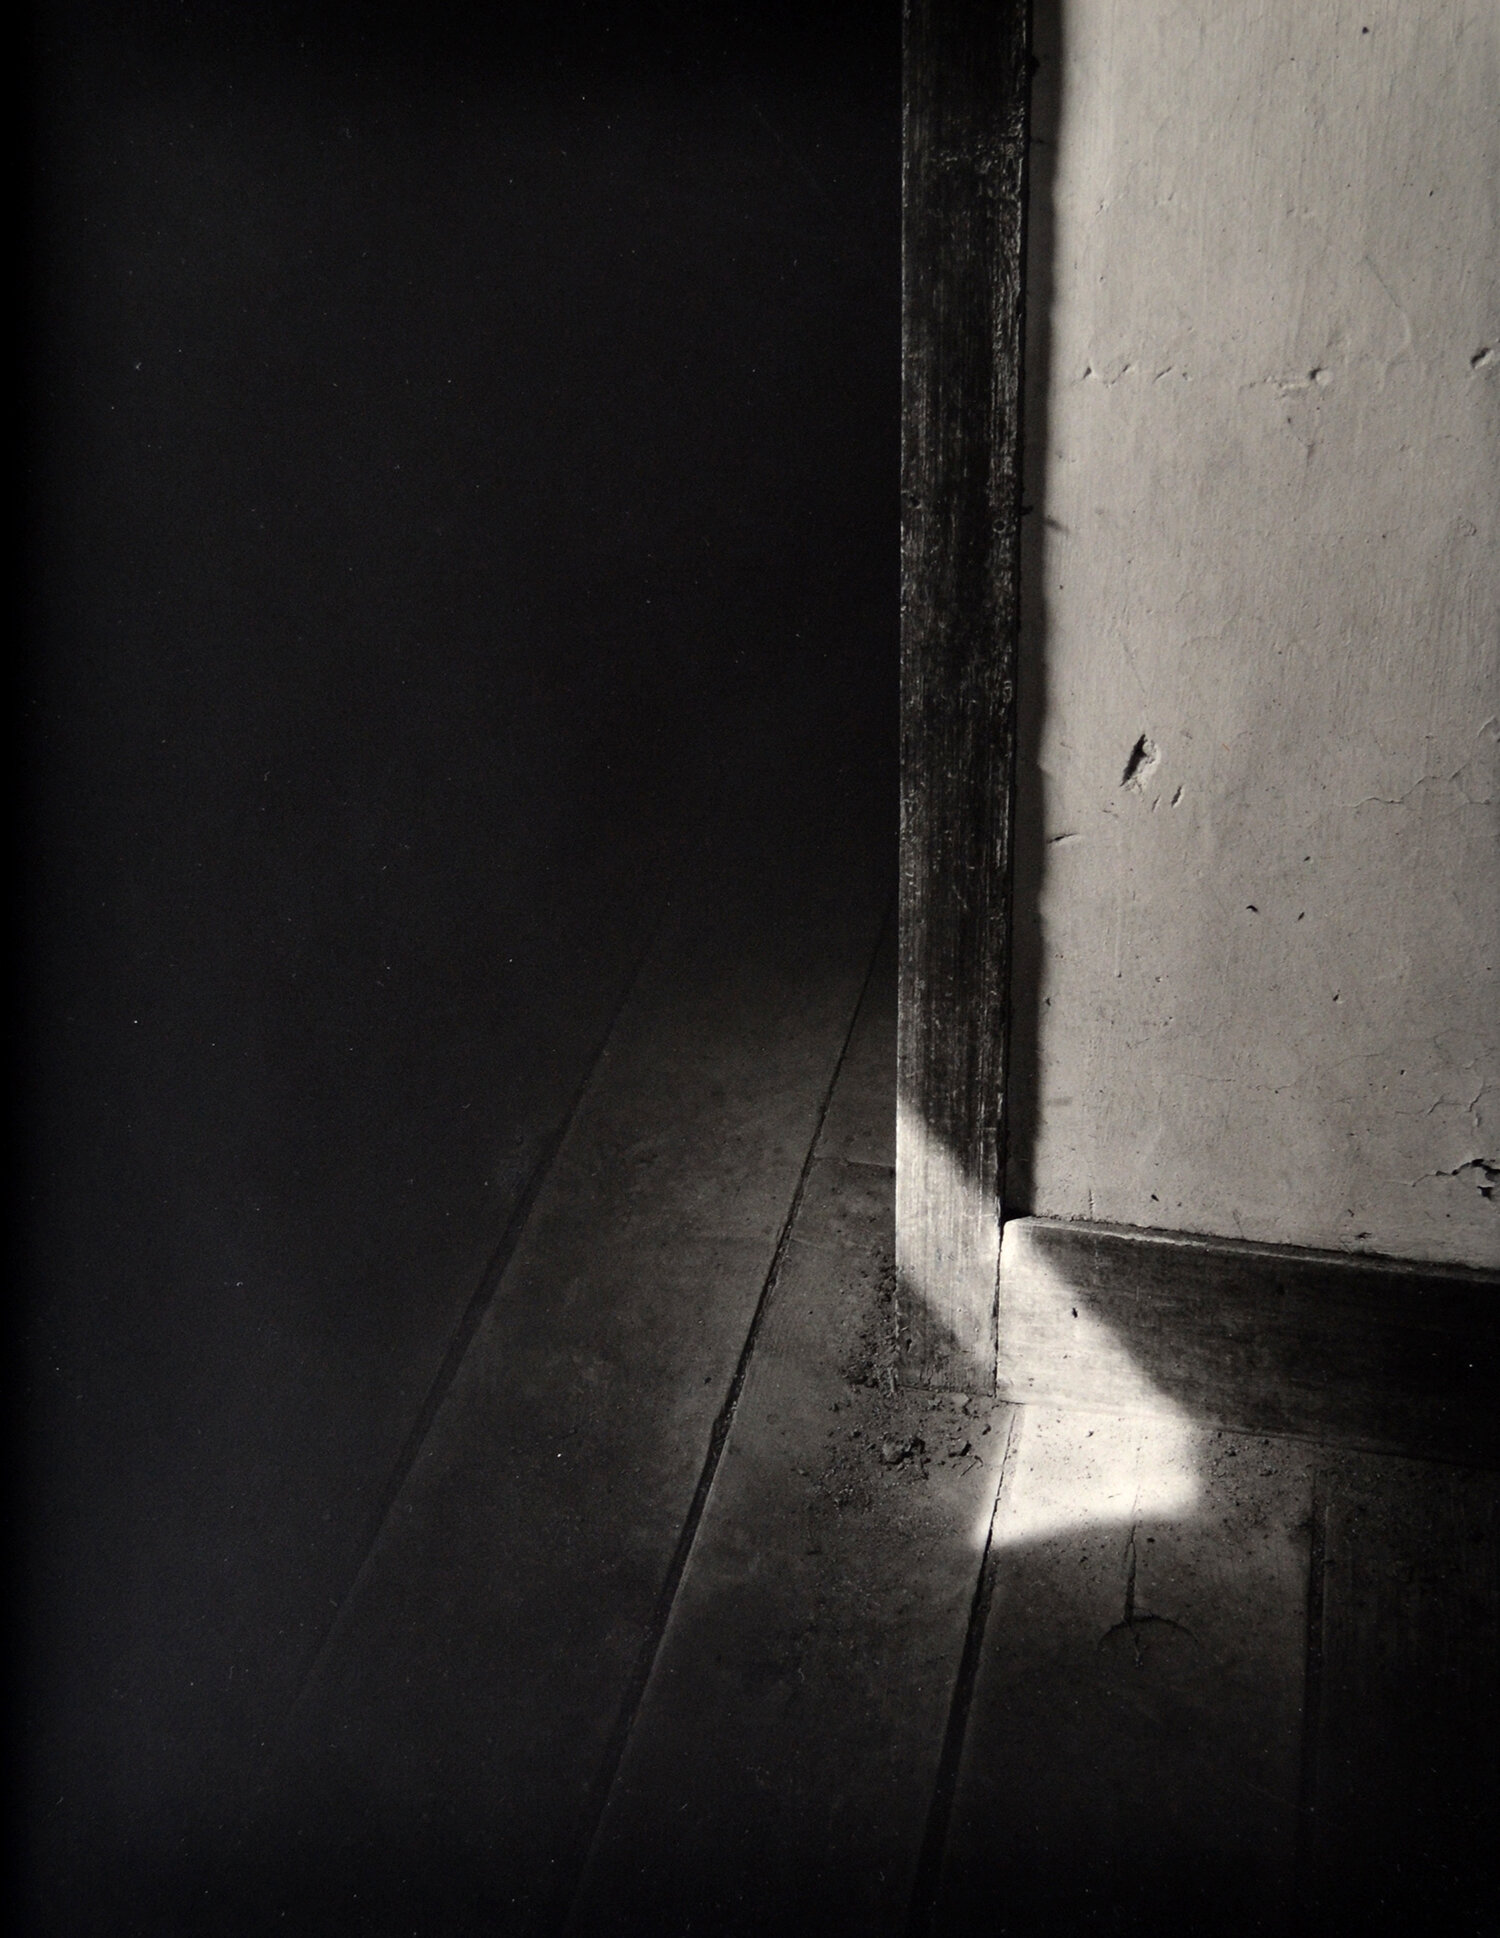 Janet Russek: Streak of Light in Doorway, Blackie's Place, 1991